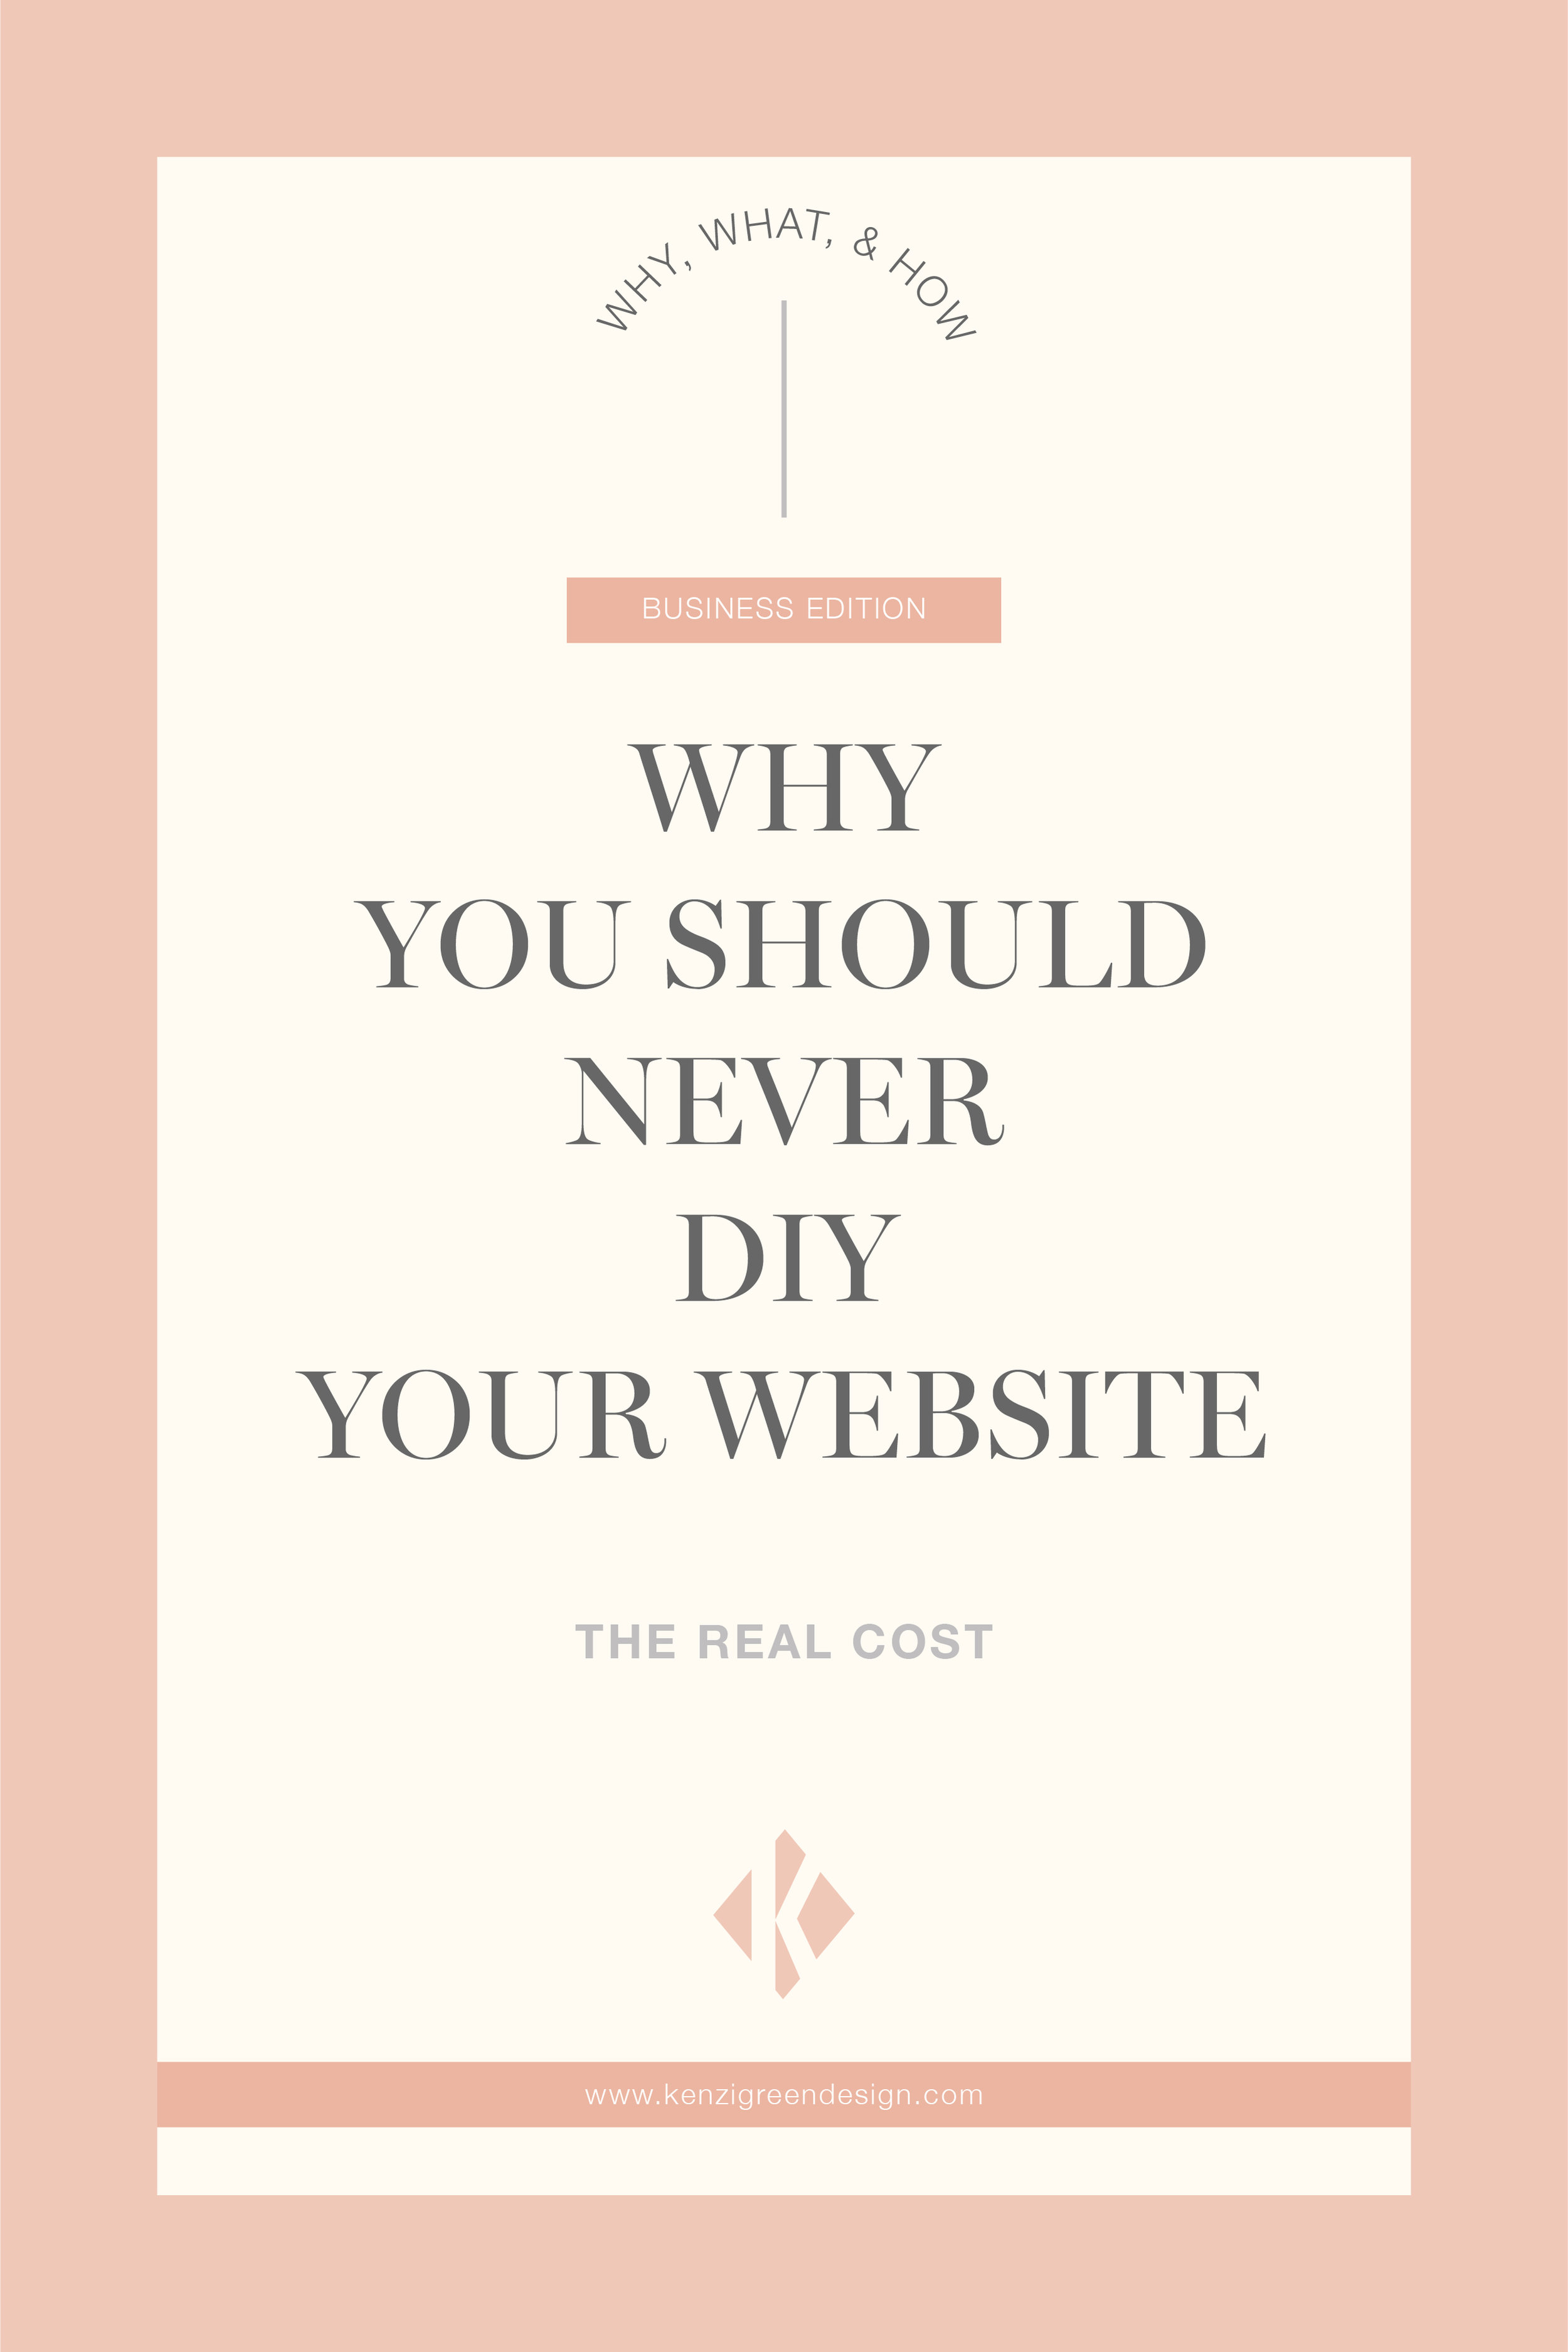 Why You Should Never DIY Your Website #webdesign #websitetips #businesstips #branding